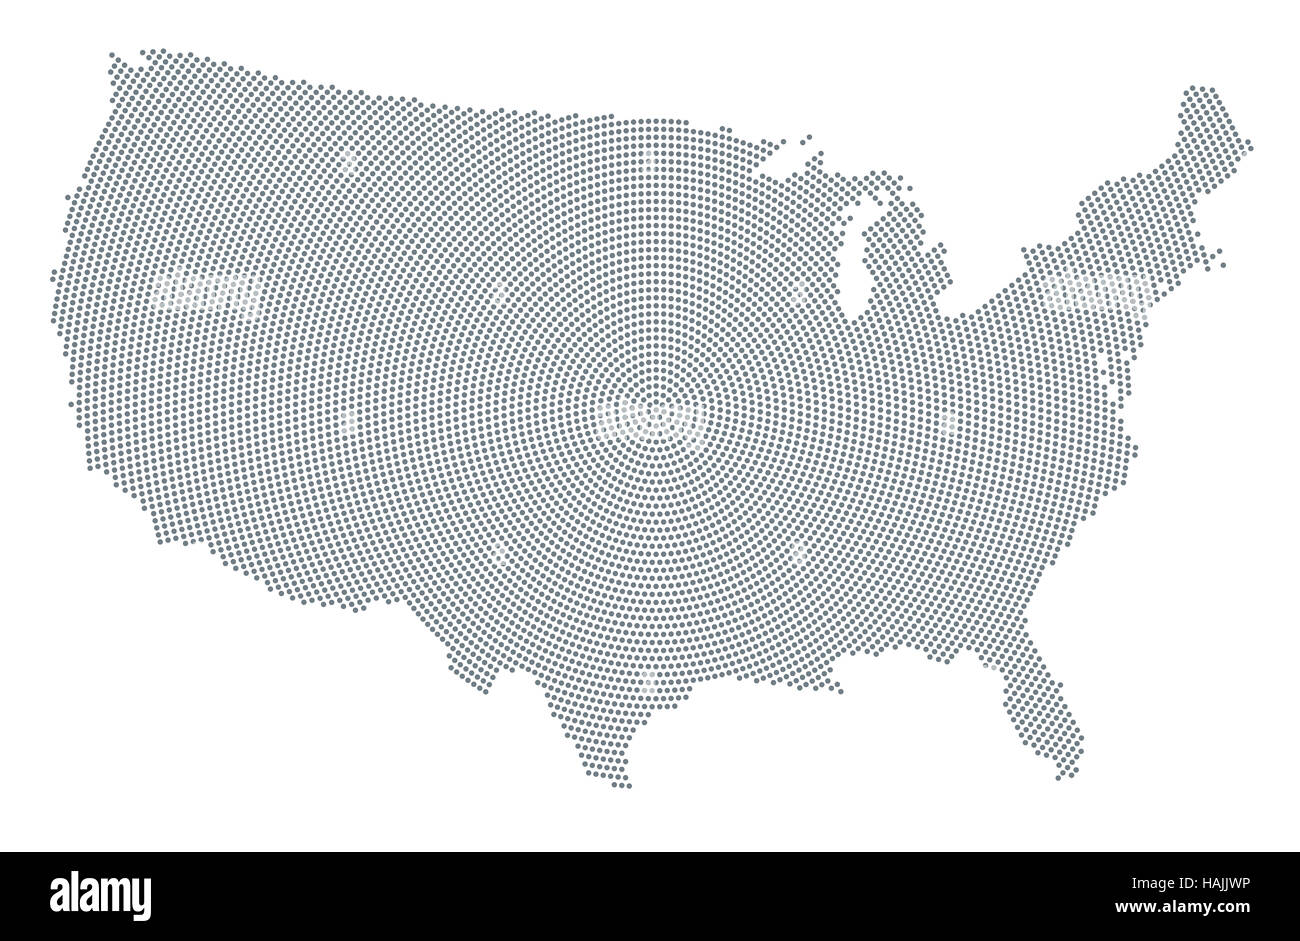 Stati Uniti d'America map radiale pattern a punti. Puntini grigi andando dal centro verso l'esterno formante la silhouette di Stati Uniti d'America. Foto Stock